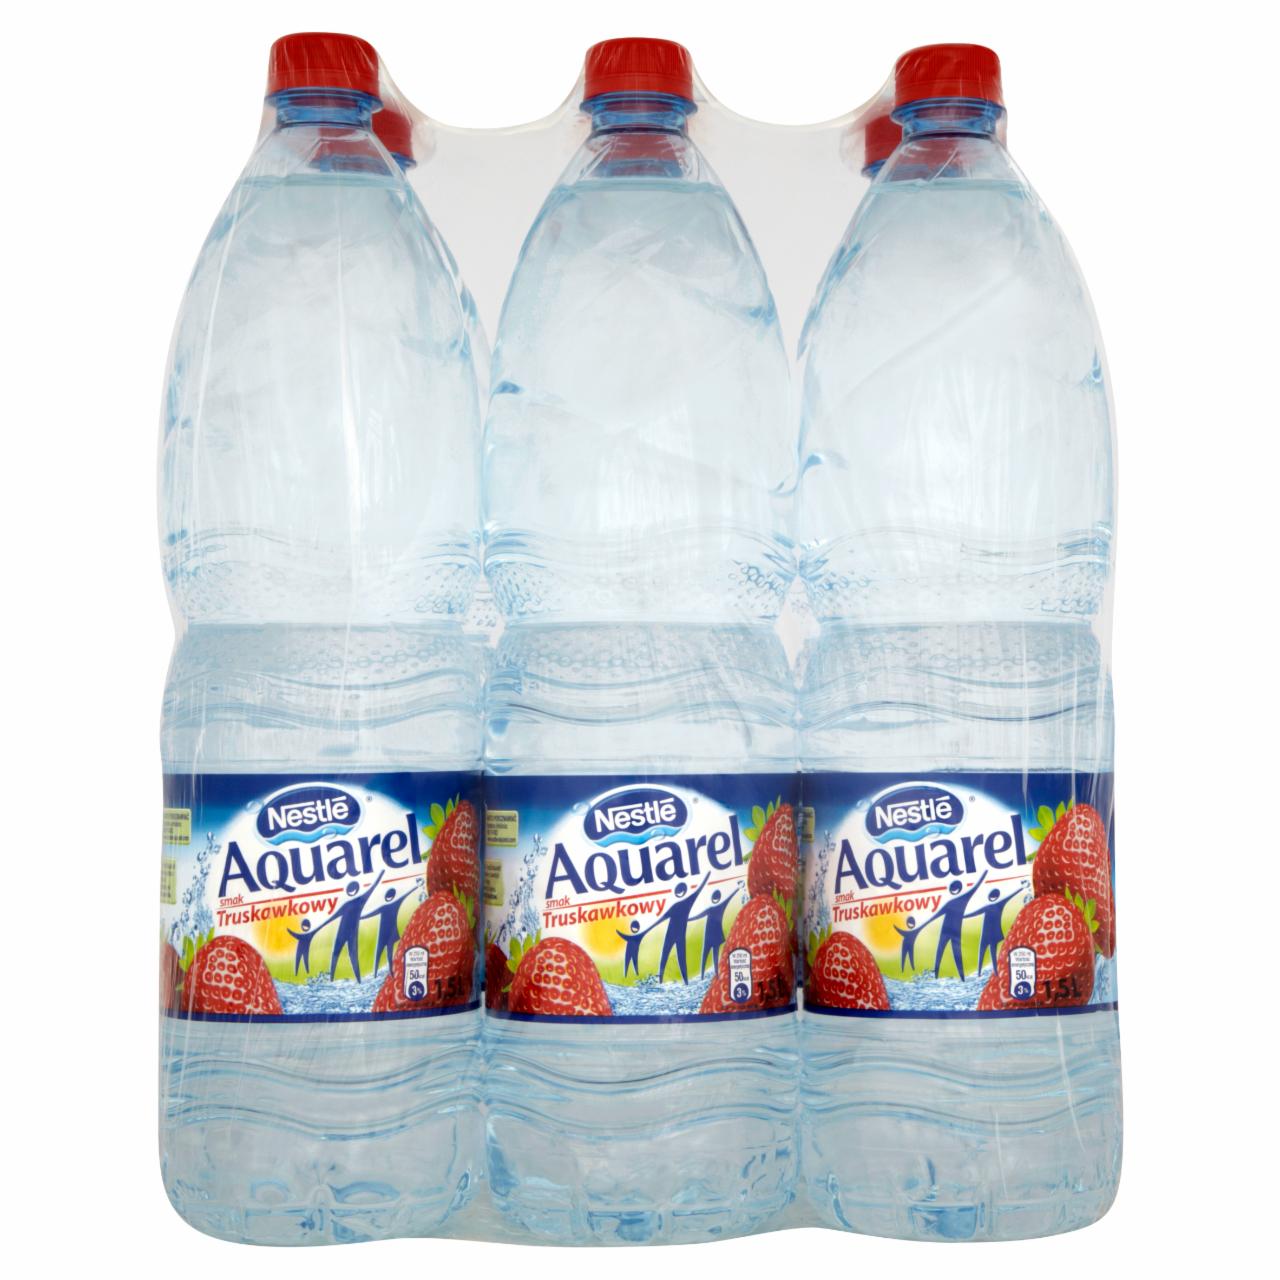 Zdjęcia - Nestlé Aquarel smak truskawkowy Napój niegazowany 6 x 1,5 l